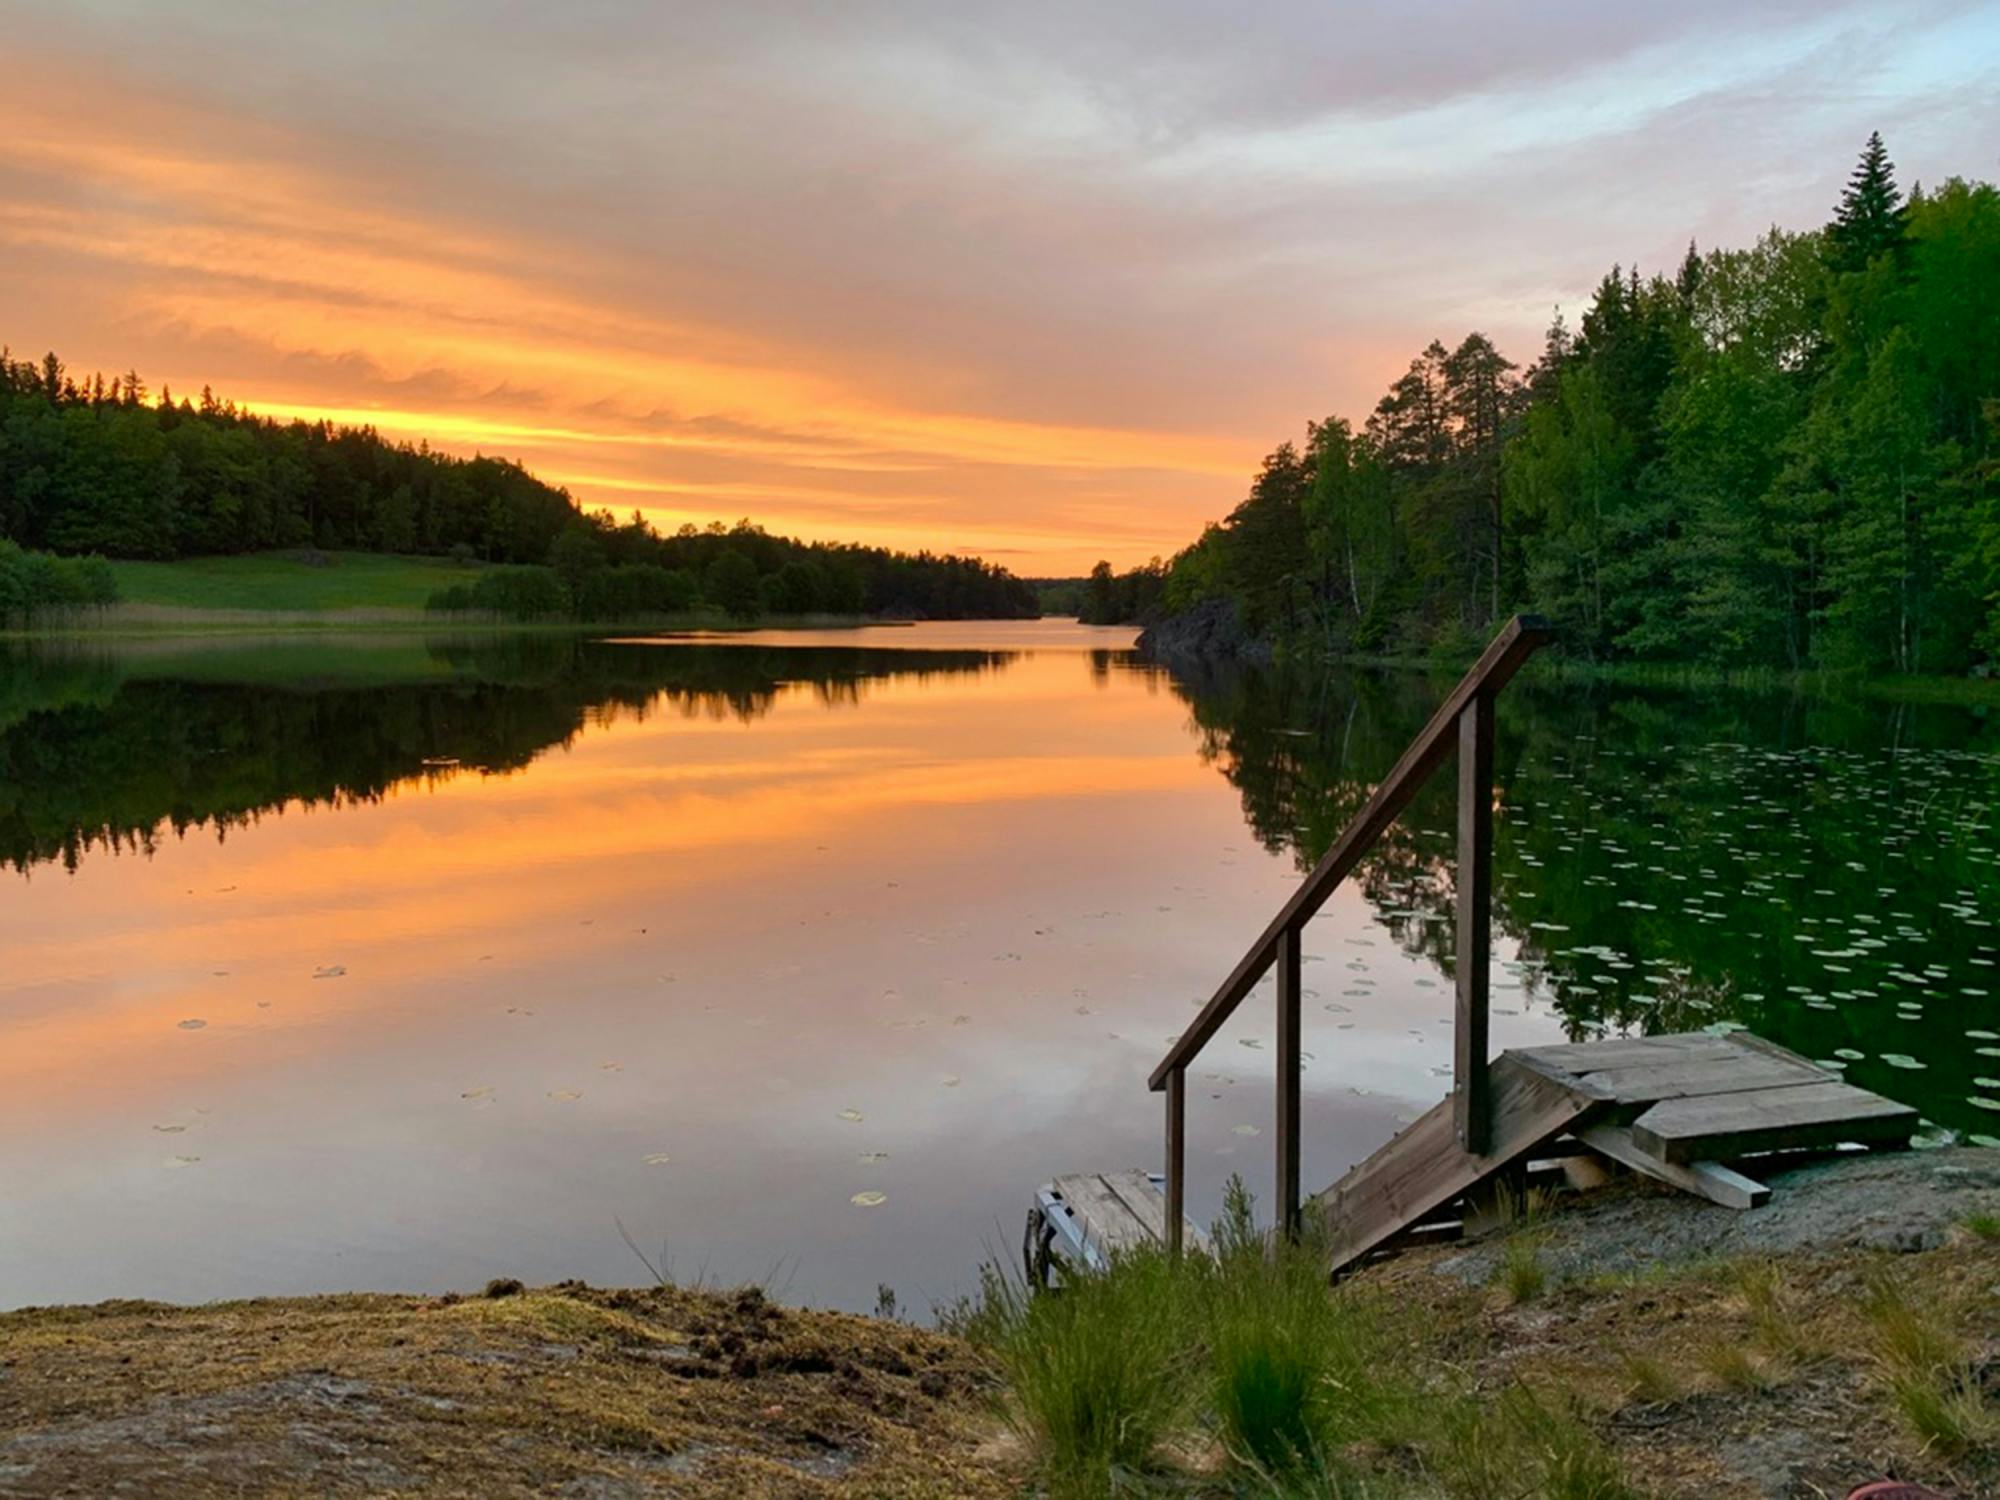 Wędrówka o zachodzie słońca i obserwowanie dzikiej przyrody w szwedzkim parku narodowym